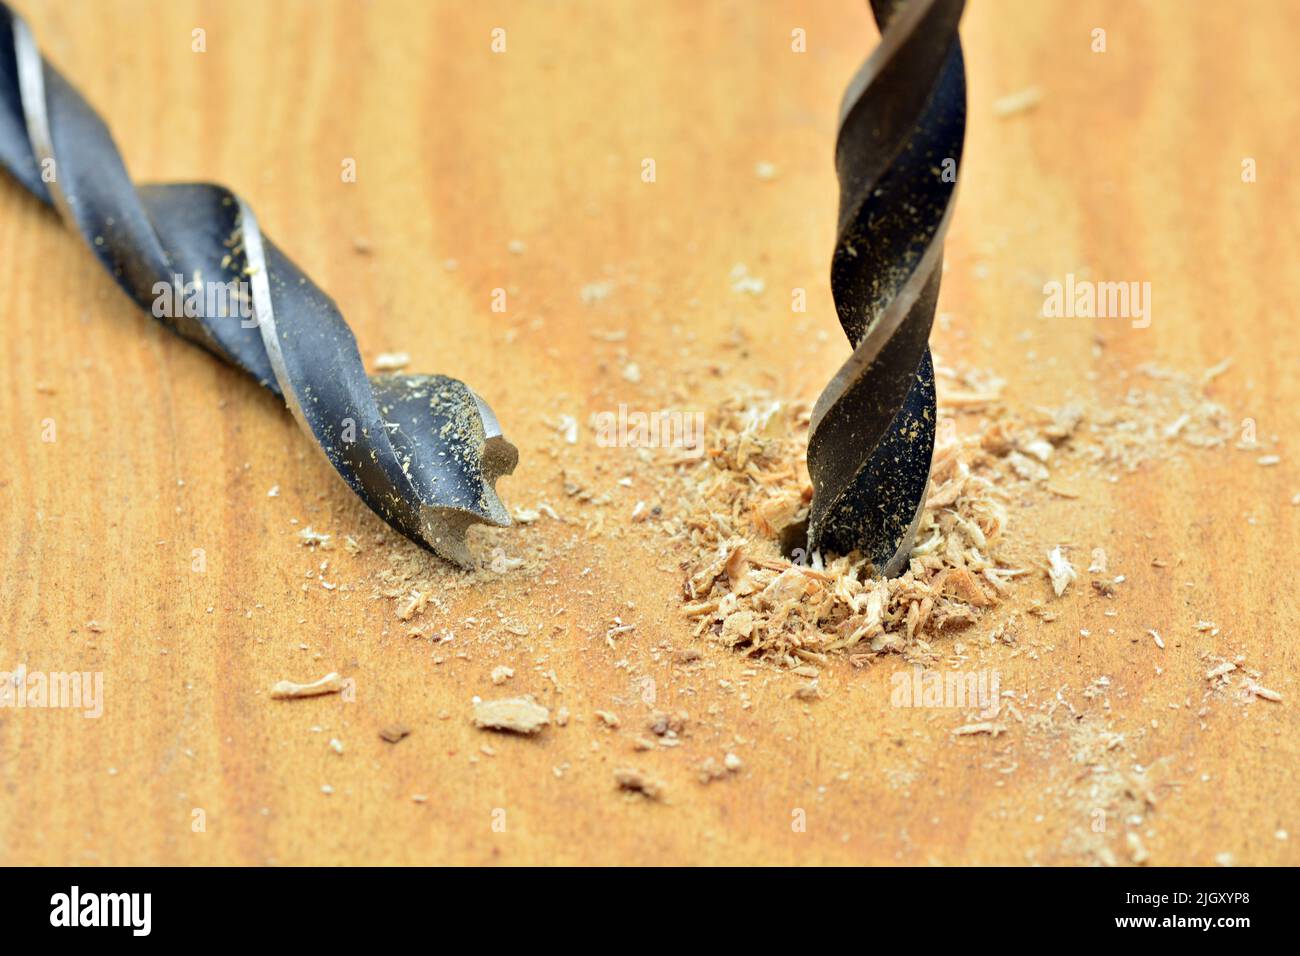 Detalle de una broca abriendo un agujero en una tabla de madera Stock Photo